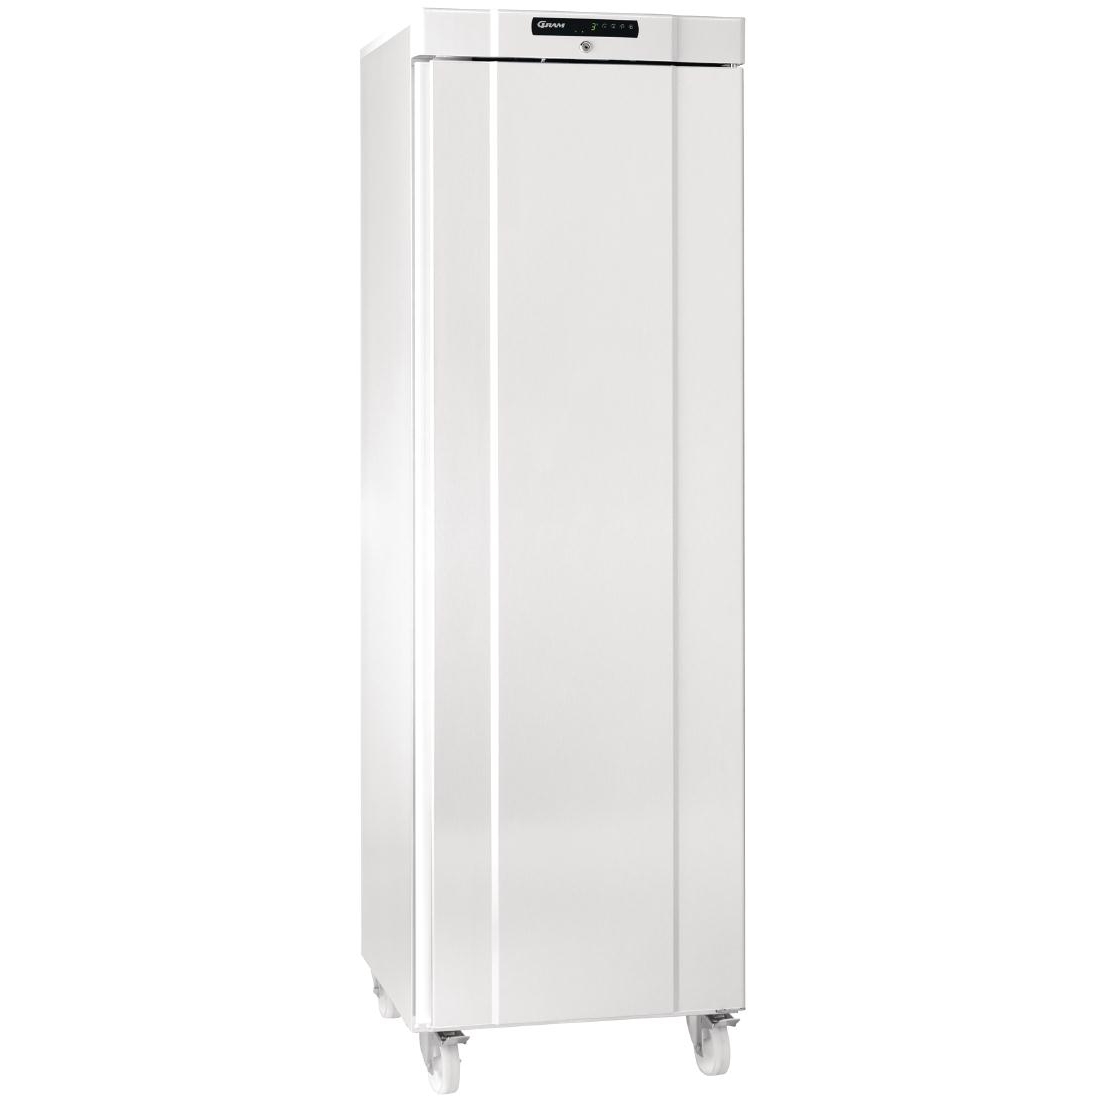 Gram Compact 1 Door 346Ltr Cabinet Freezer F410 LGC 6W